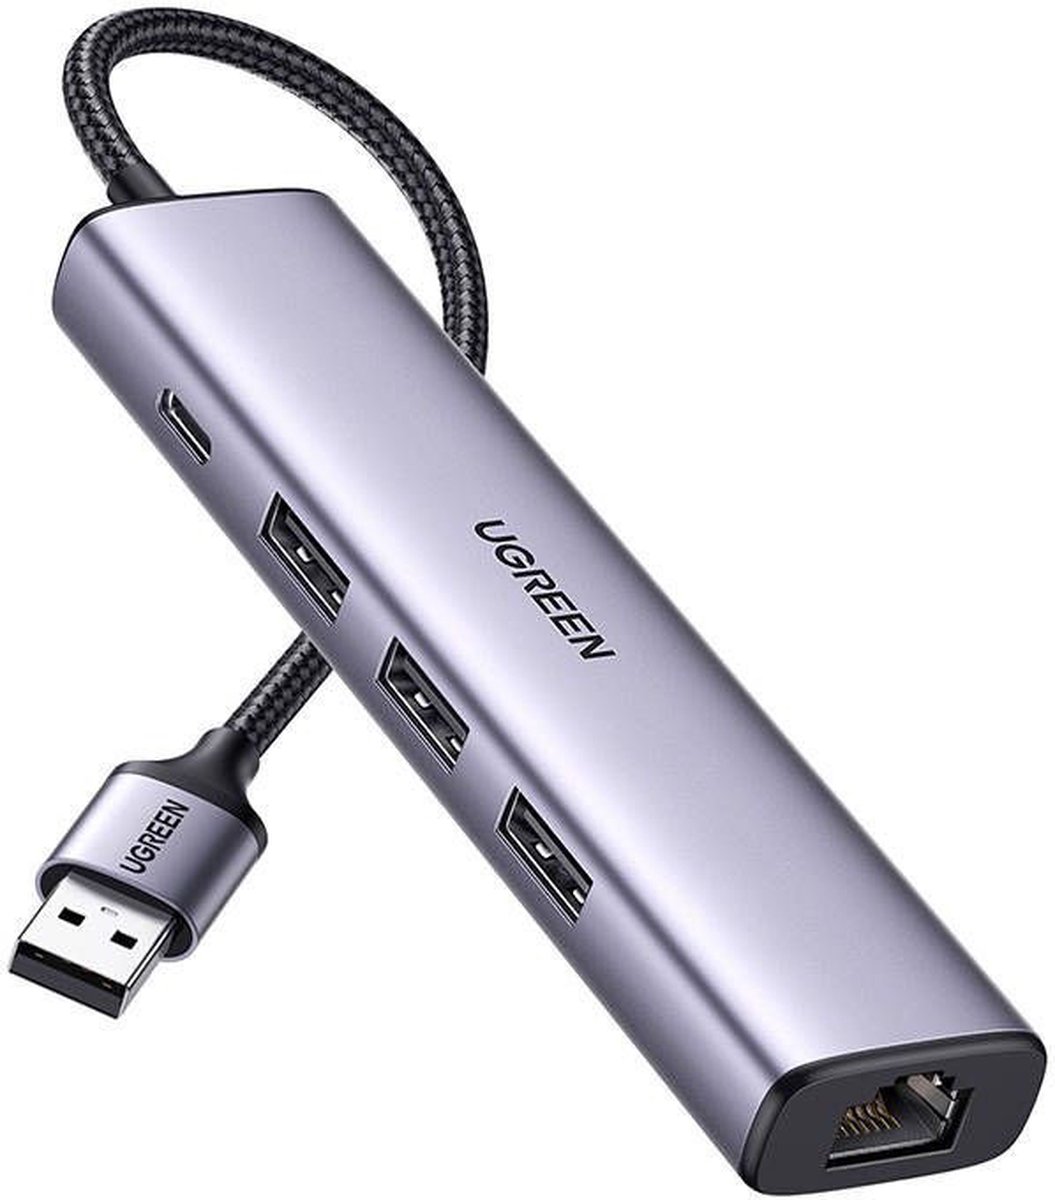 UGREEN 5-in-1 USB HUB met USB-A / USB-C / Ethernet voor Laptop/Macbook